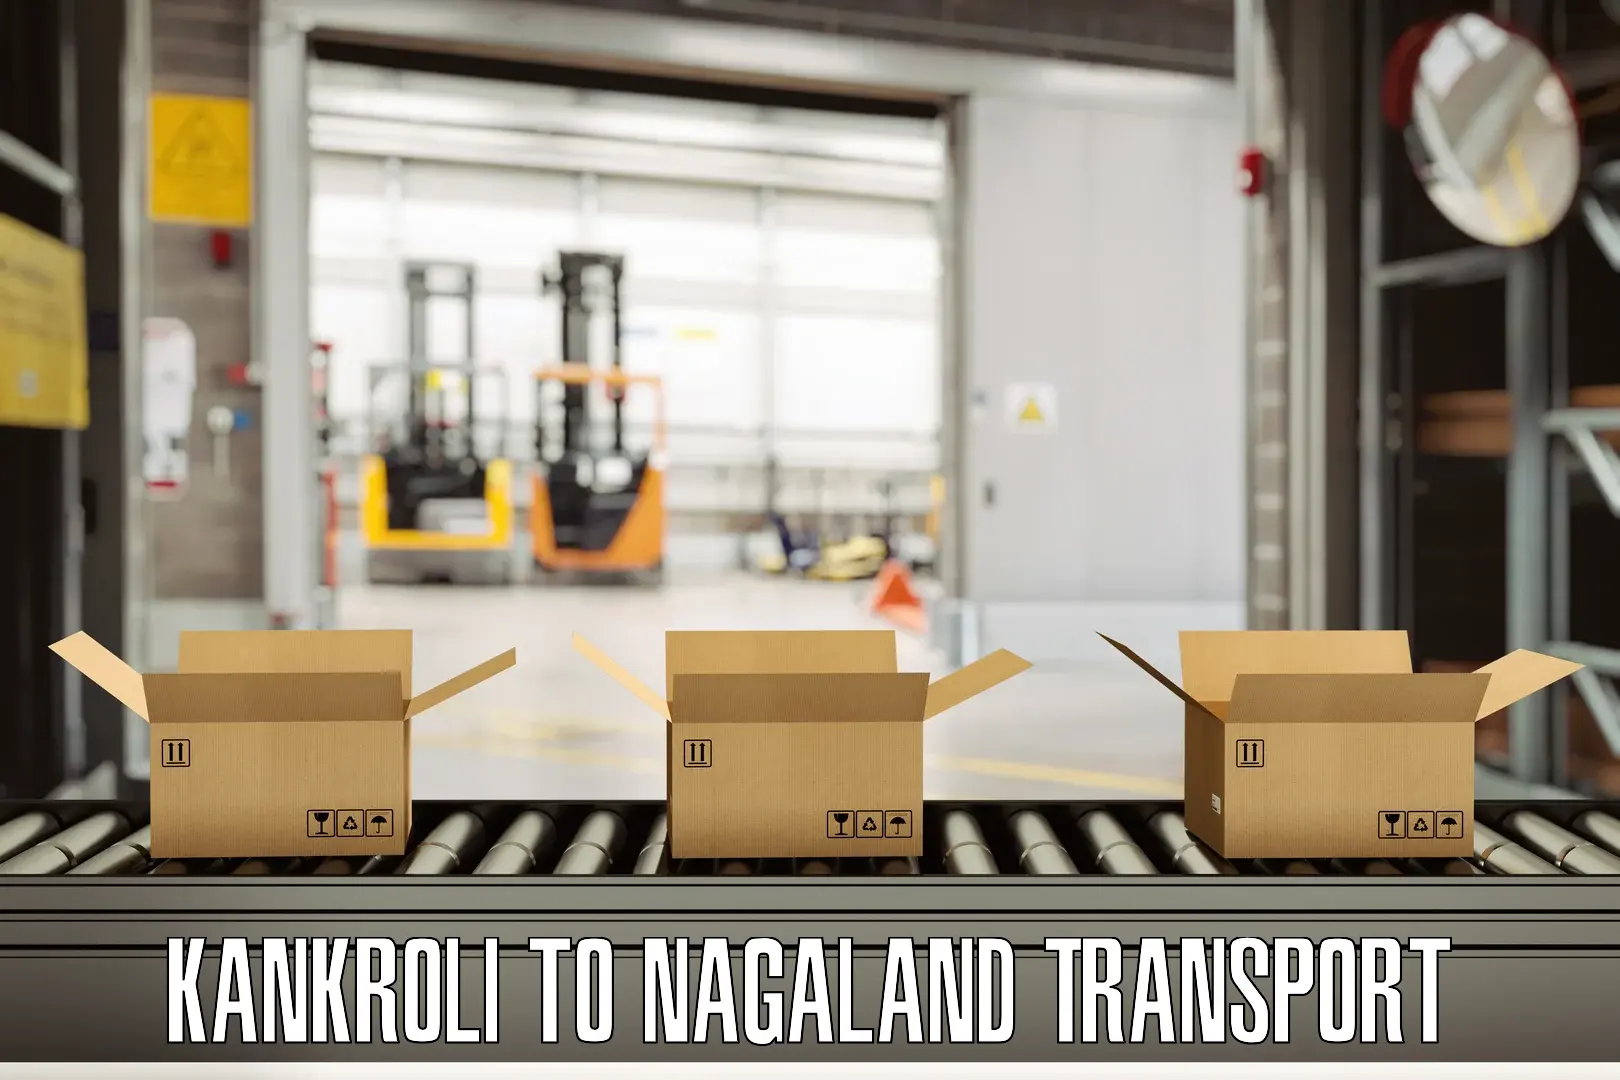 Delivery service Kankroli to Nagaland